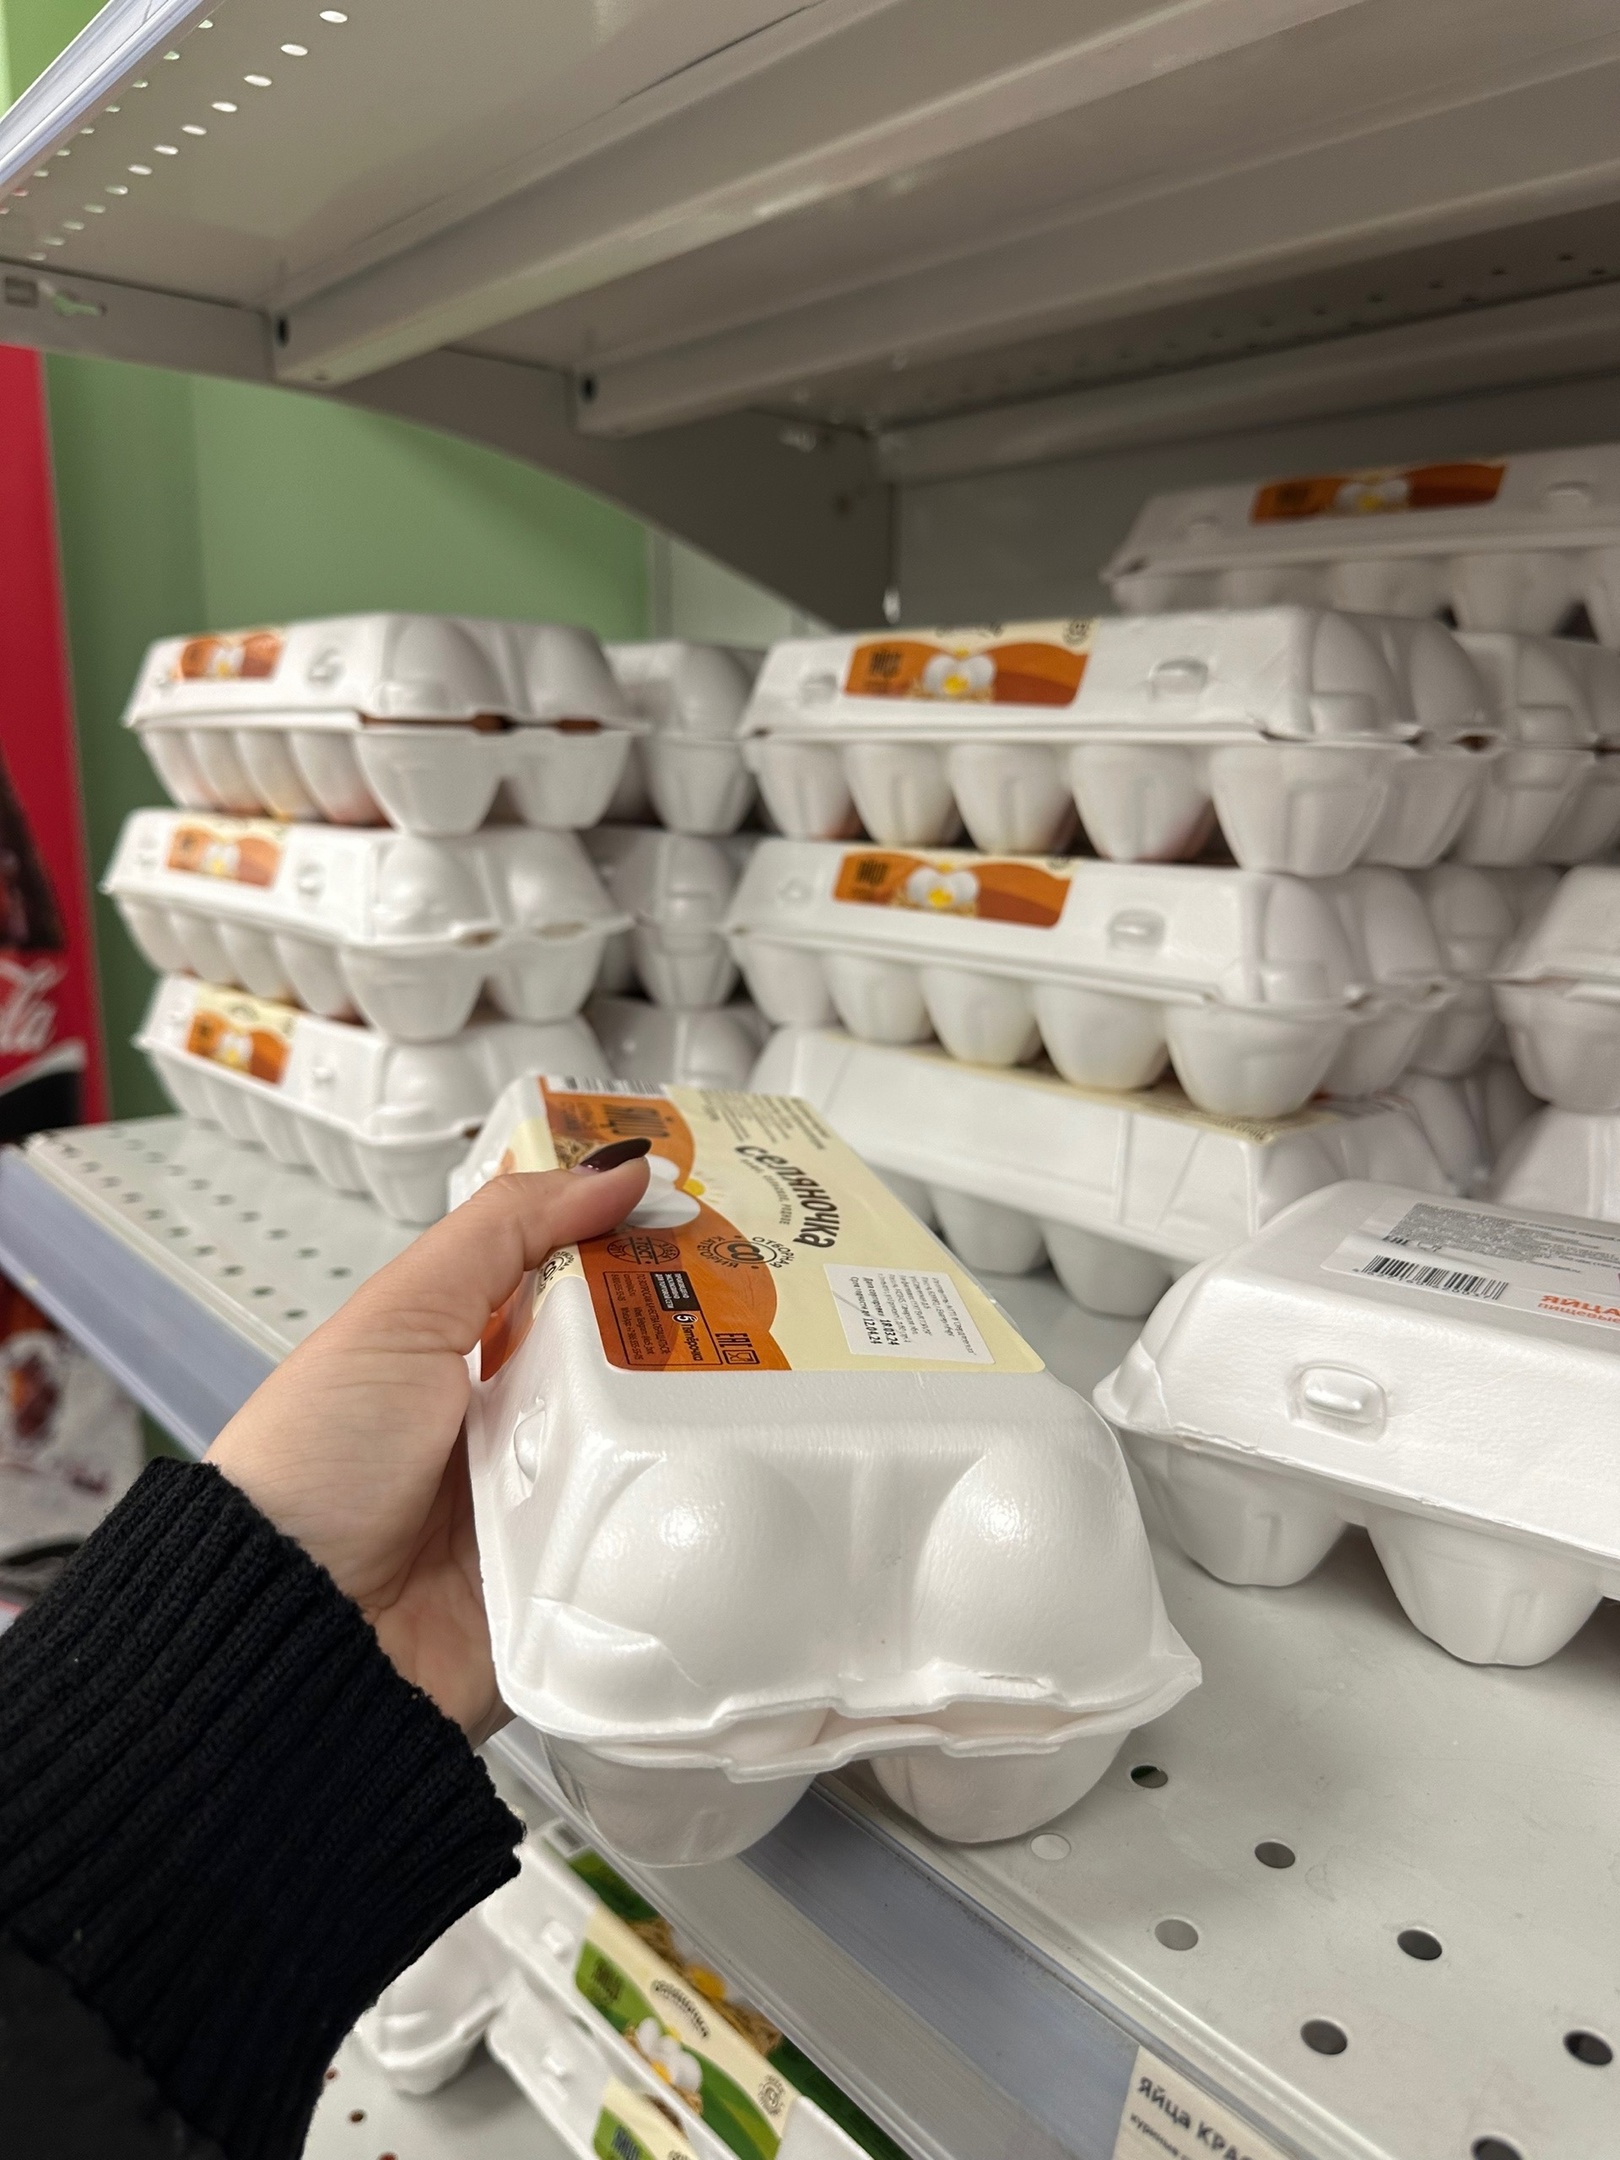 Цены на яйца категории С2 снизились в пензенских магазинах